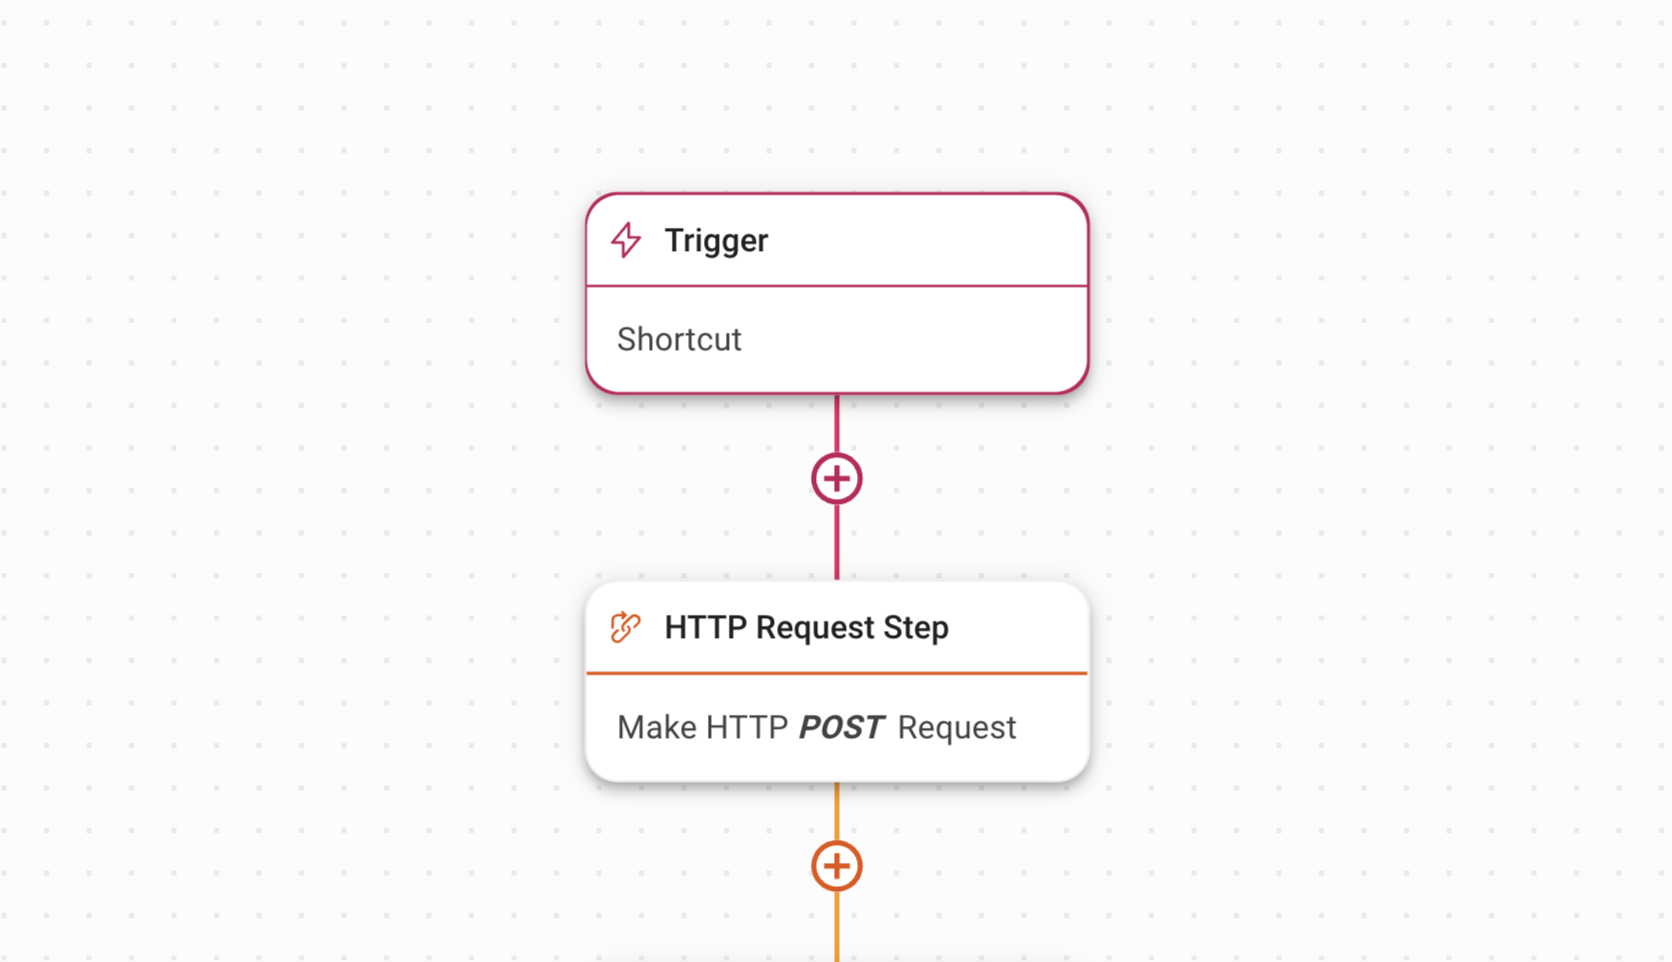 لقطة شاشة لسير العمل للقيام بطلب مشاركة HTTP